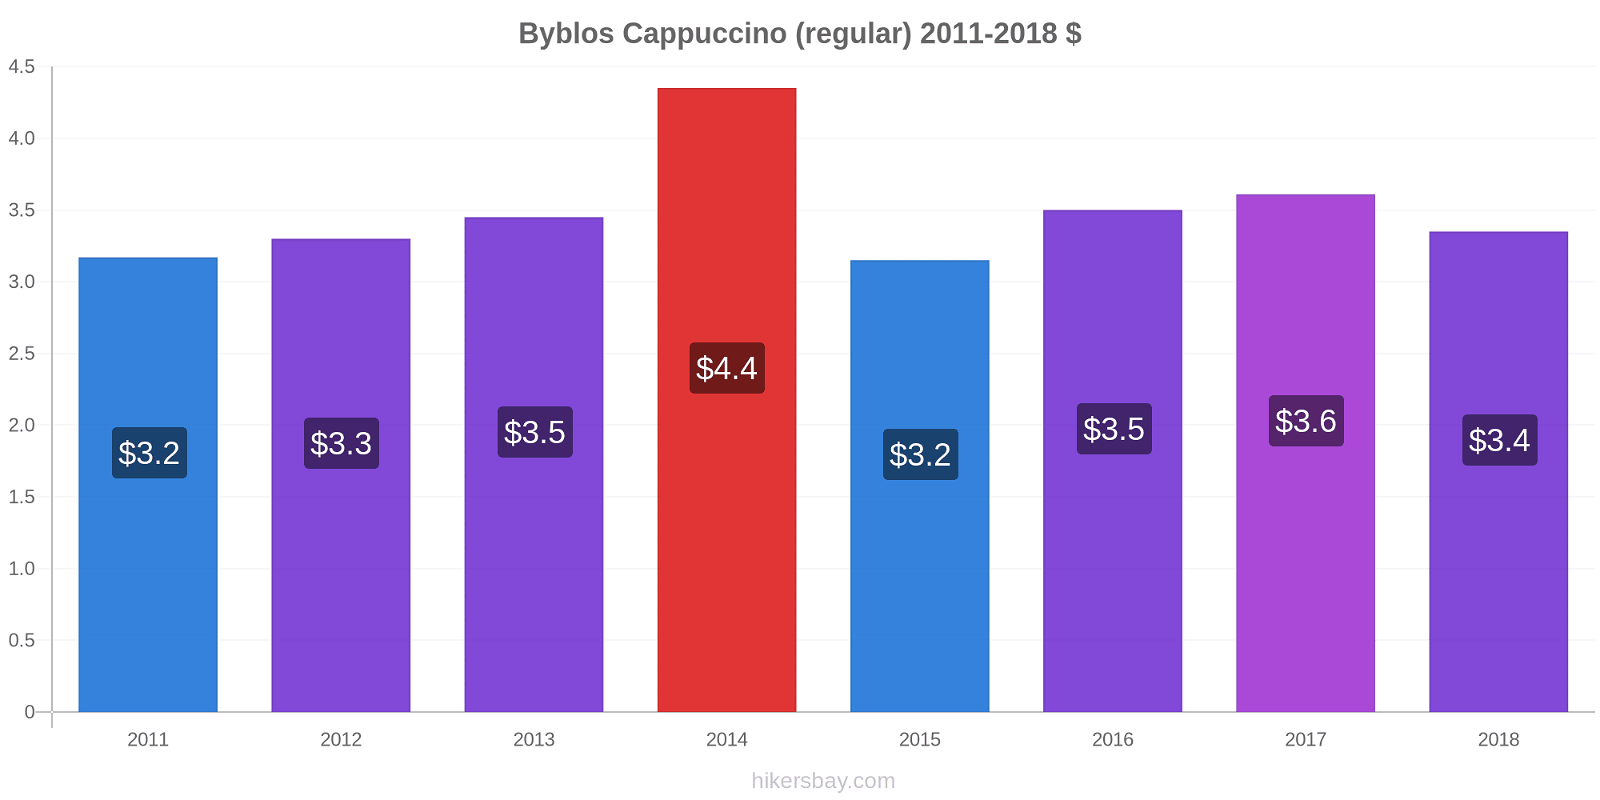 Byblos price changes Cappuccino (regular) hikersbay.com